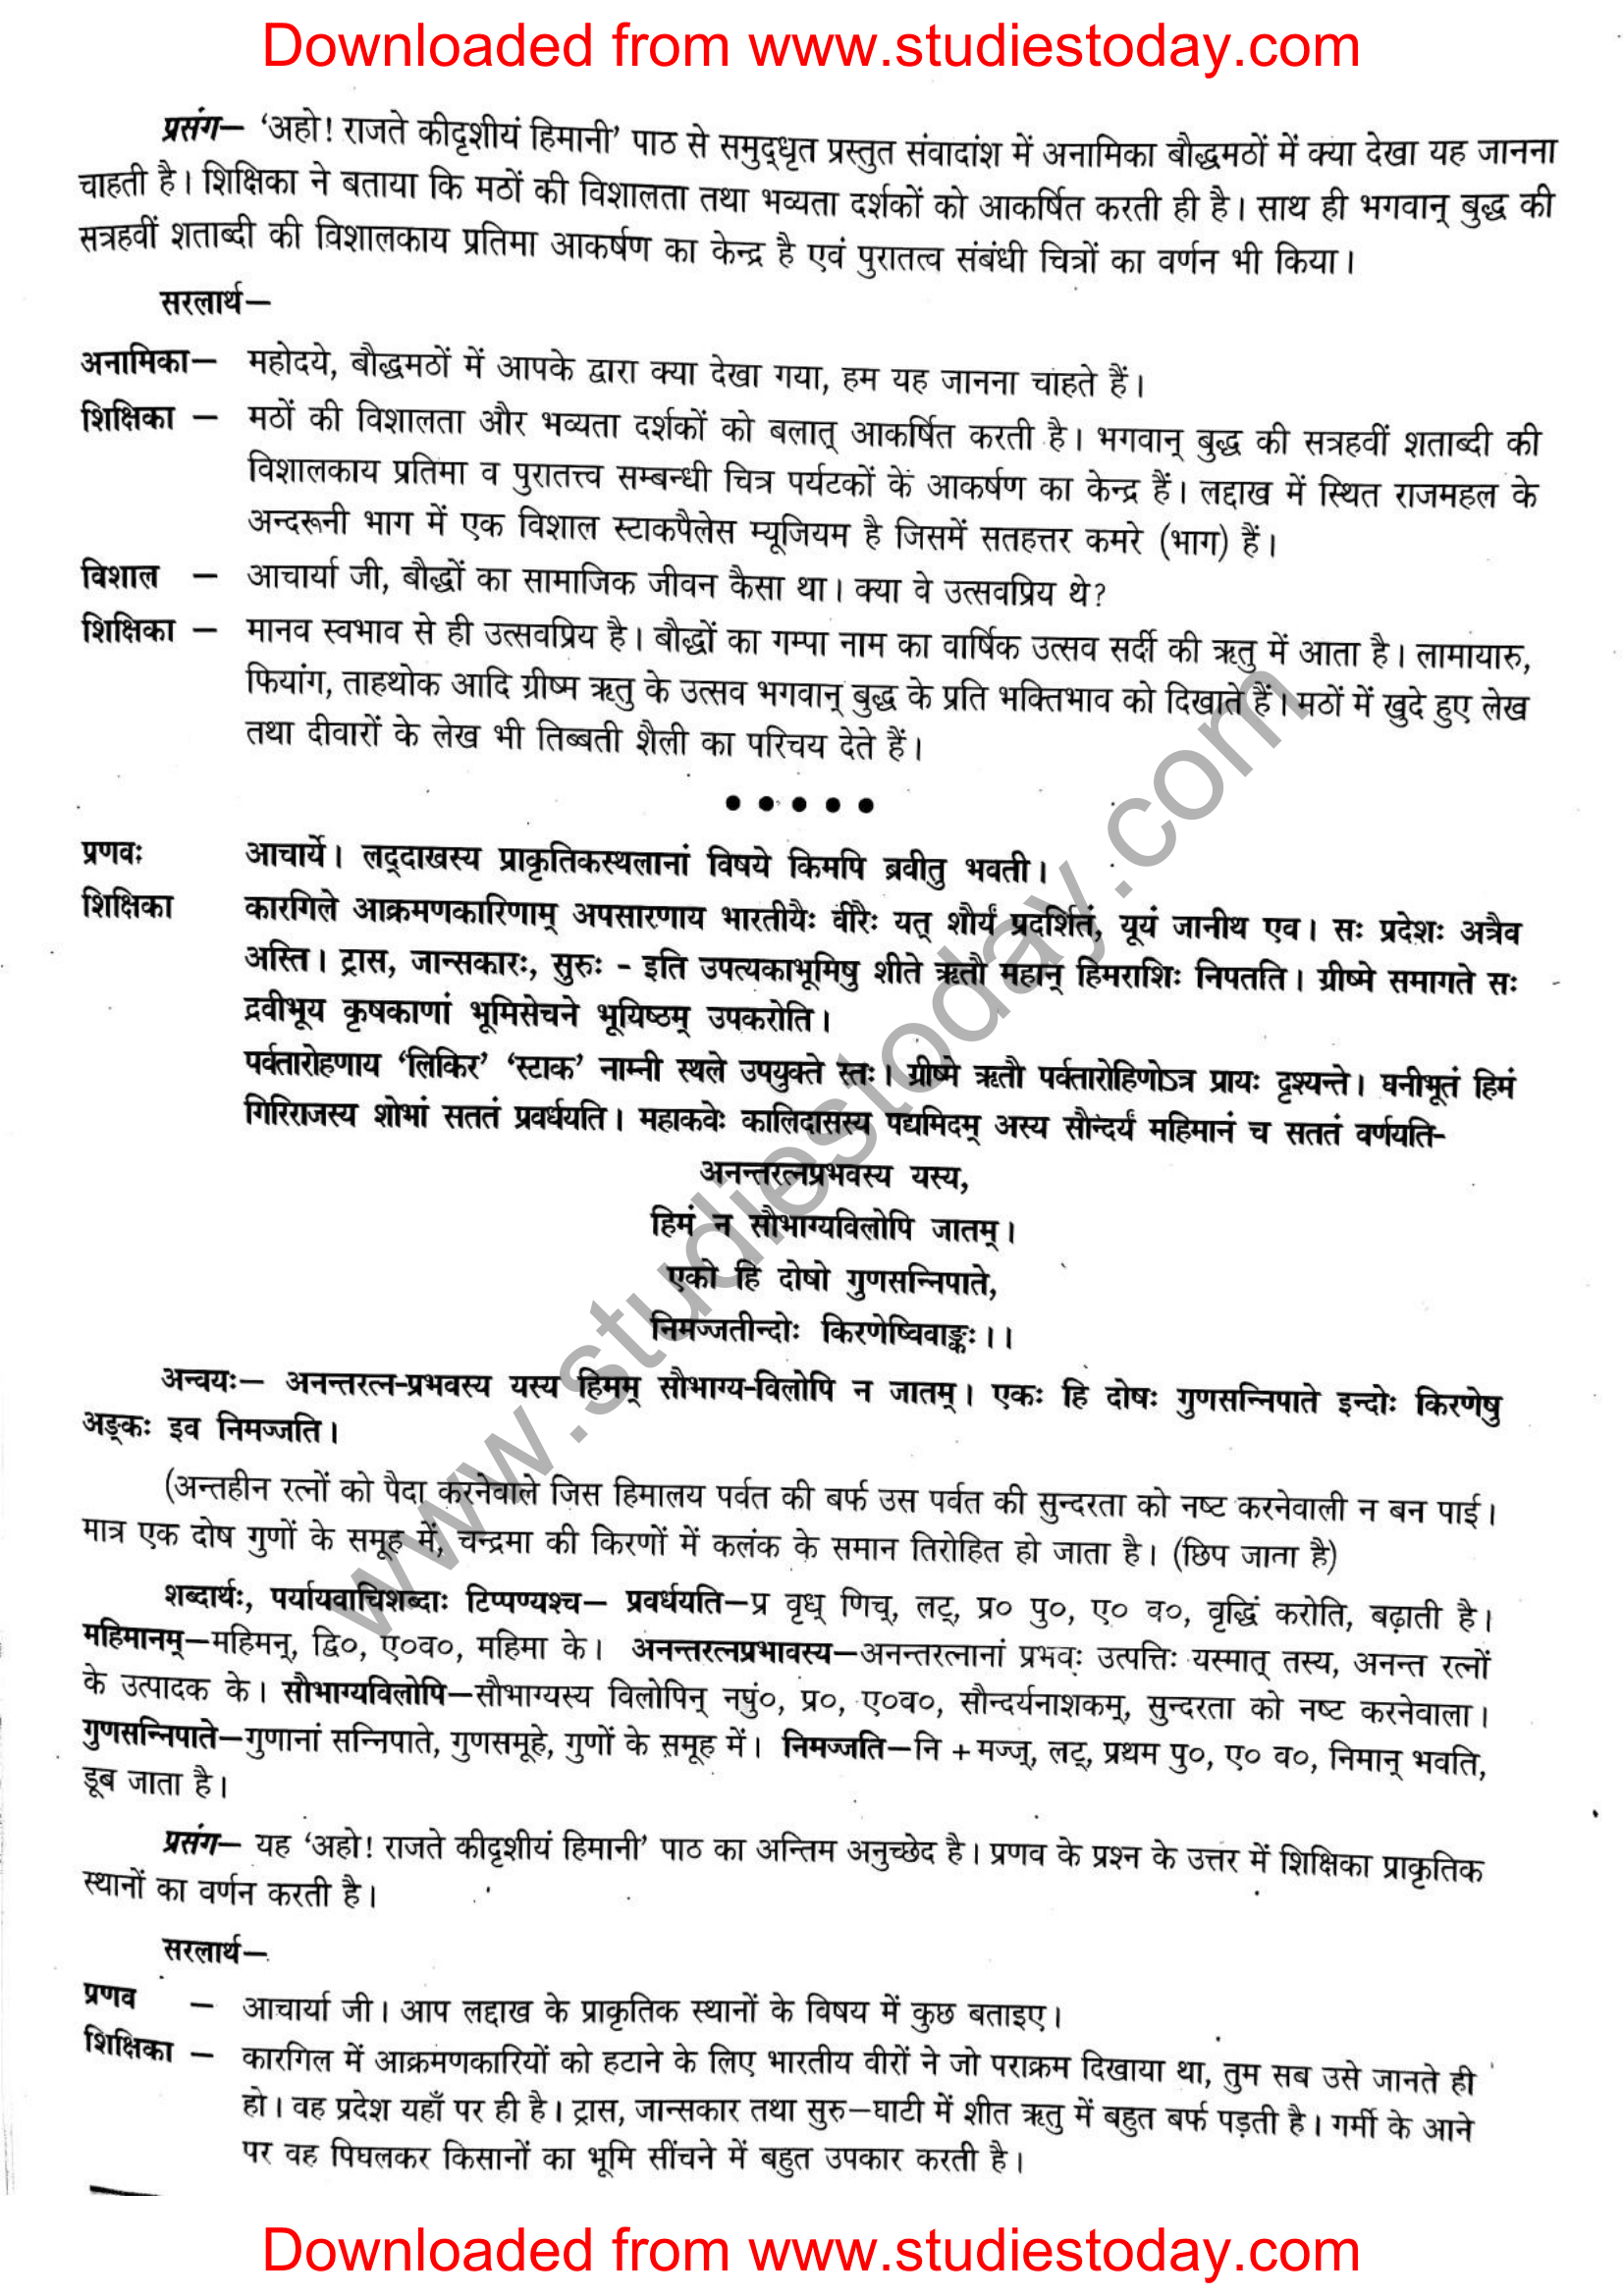 ncert-solutions-class-12-sanskrit-ritikia-chapter-5-04